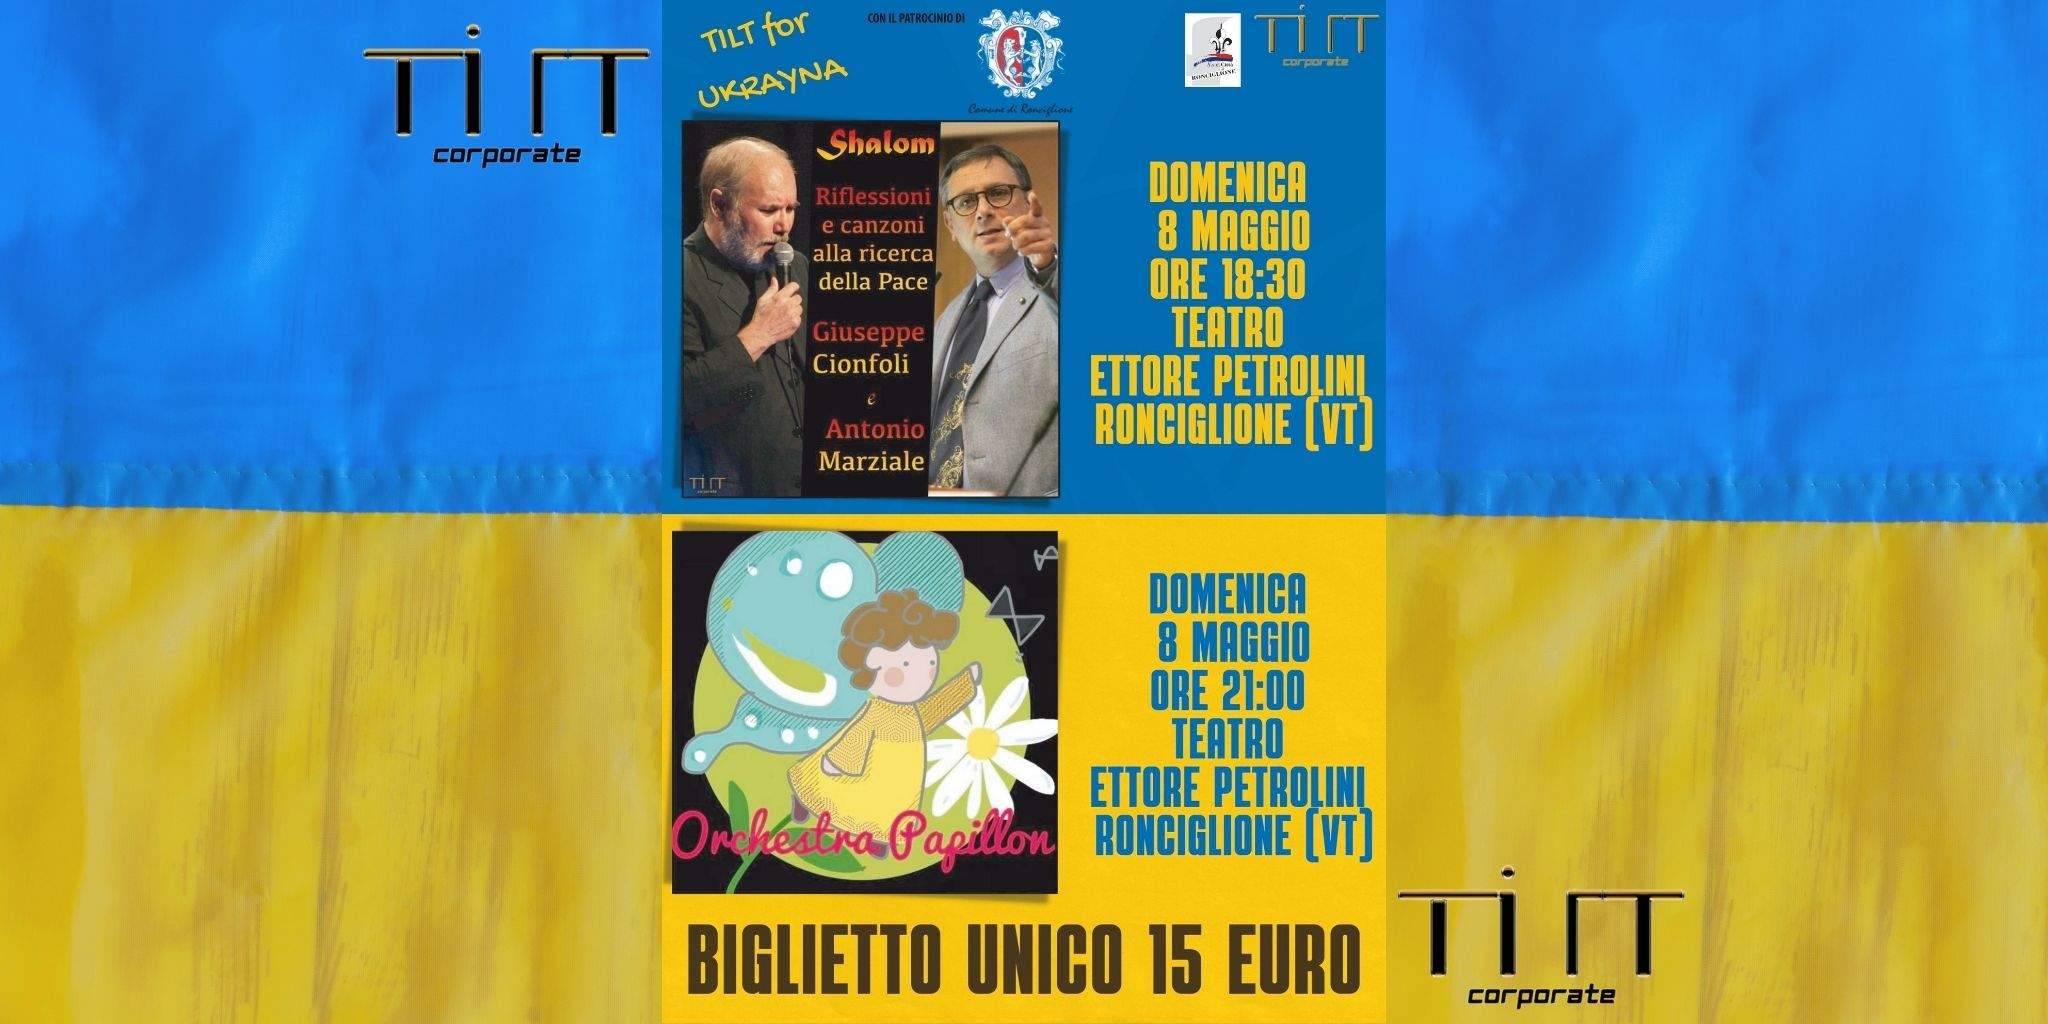 Tilt for Ucraina: 8 Maggio presso il Teatro Comunale Ettore Petrolini di Ronciglione (VT)